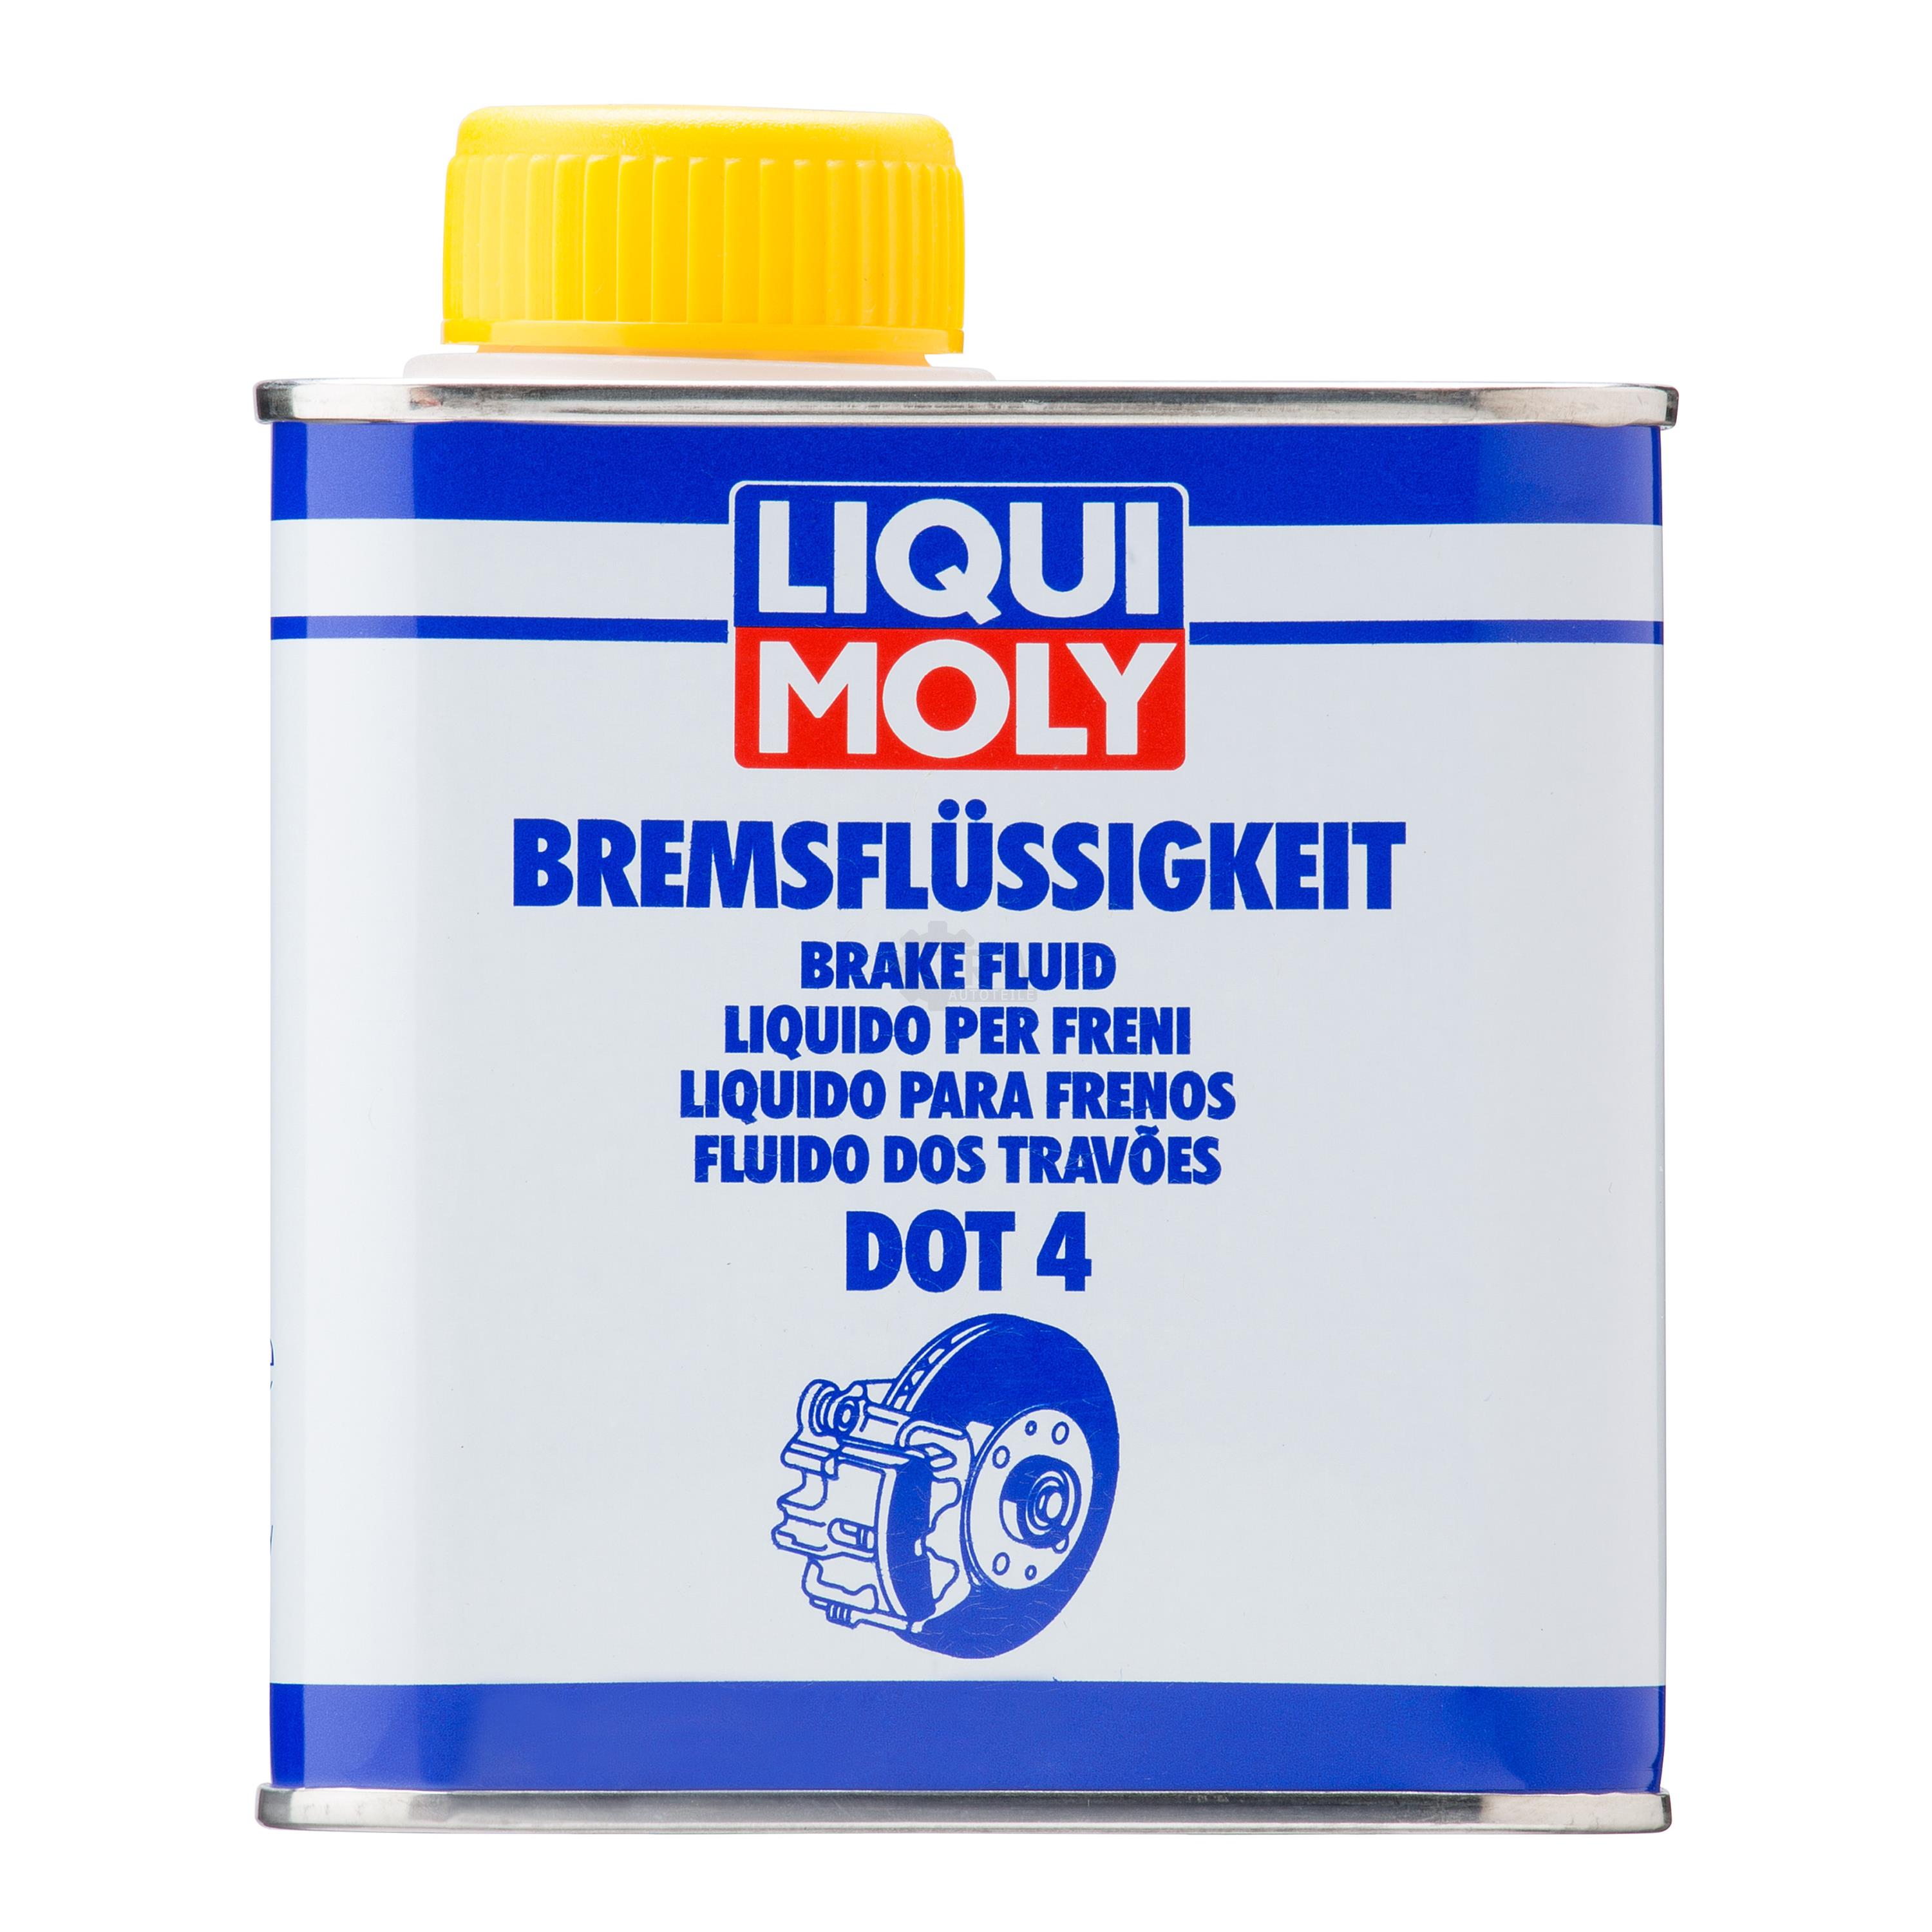 Liqui Moly Bremsflüssigkeit DOT 4 Bremsen Flüssigkeit Brake Fluid 500 ml